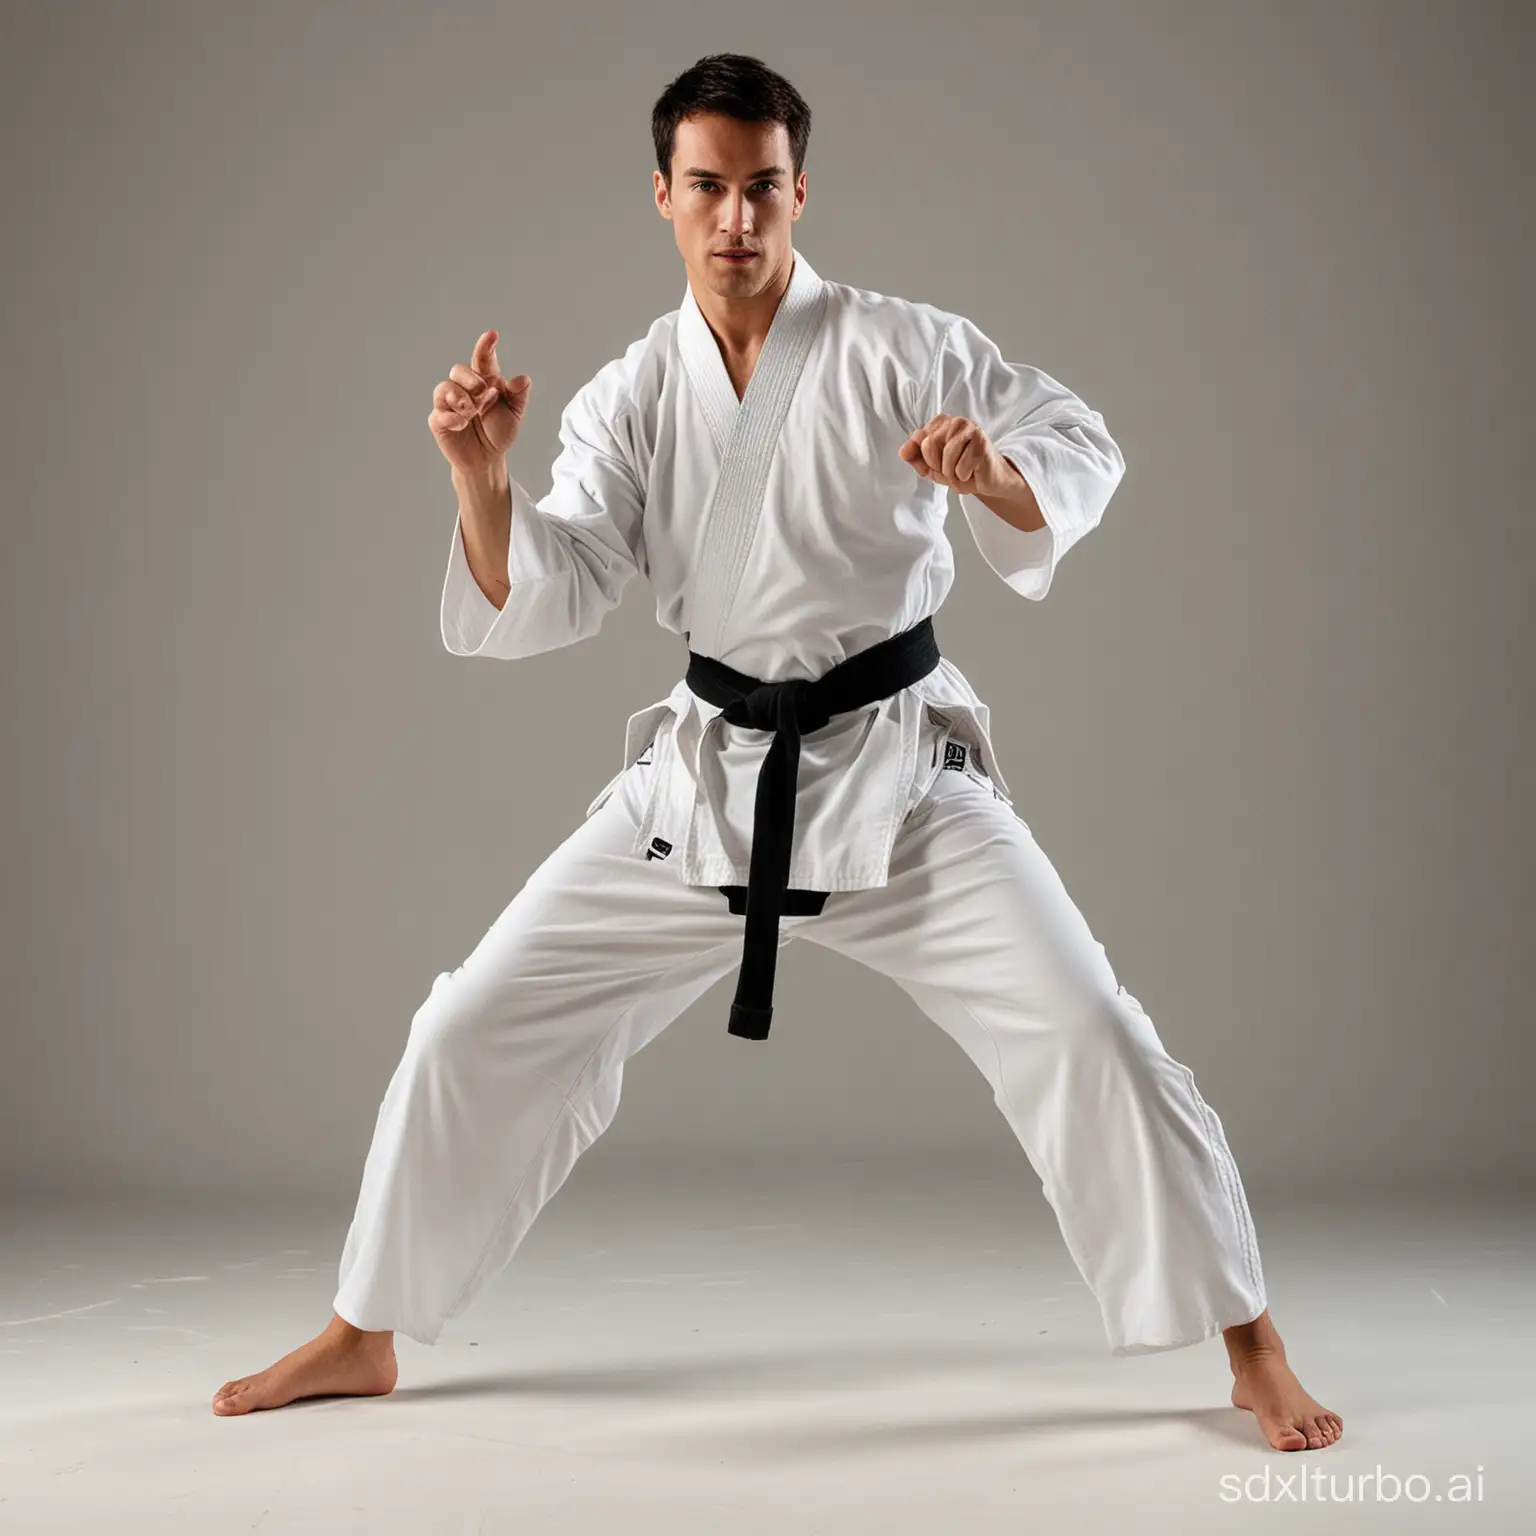 Focused-Martial-Arts-Training-for-Men